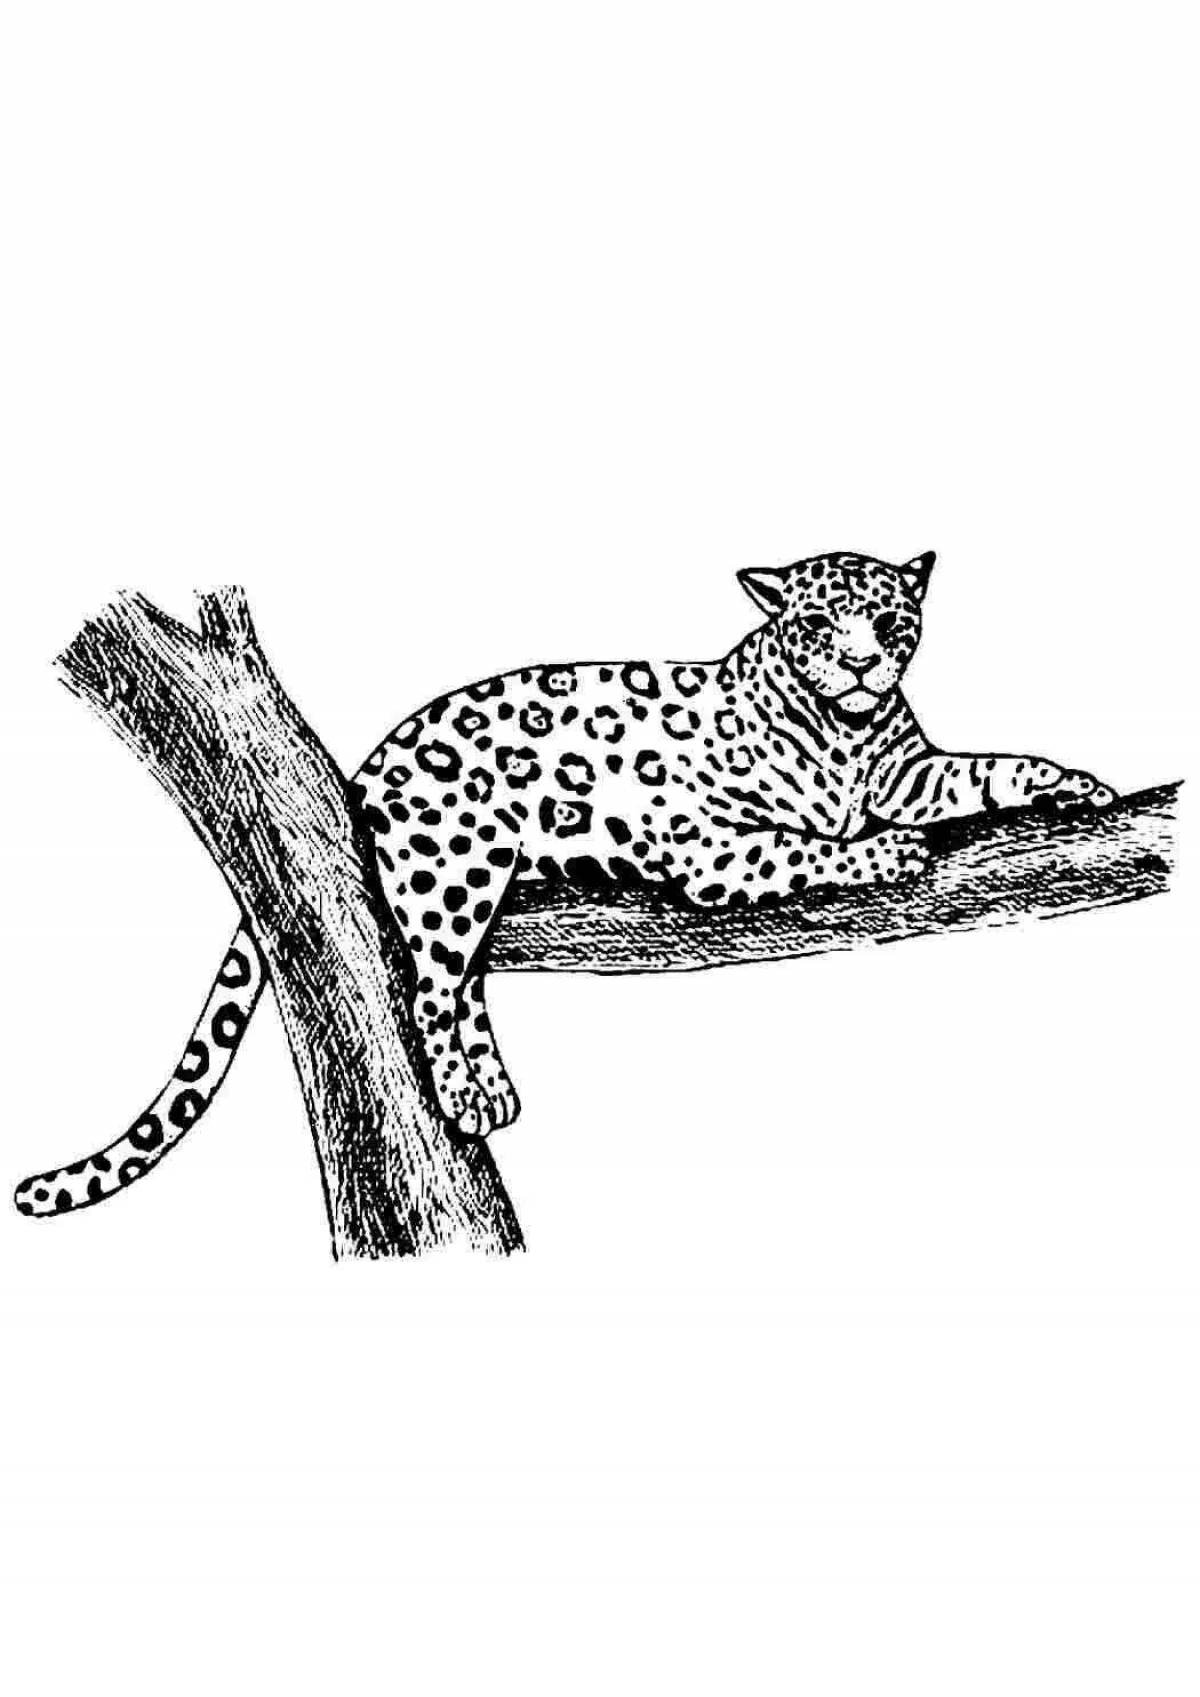 Joyful jaguar coloring book for kids